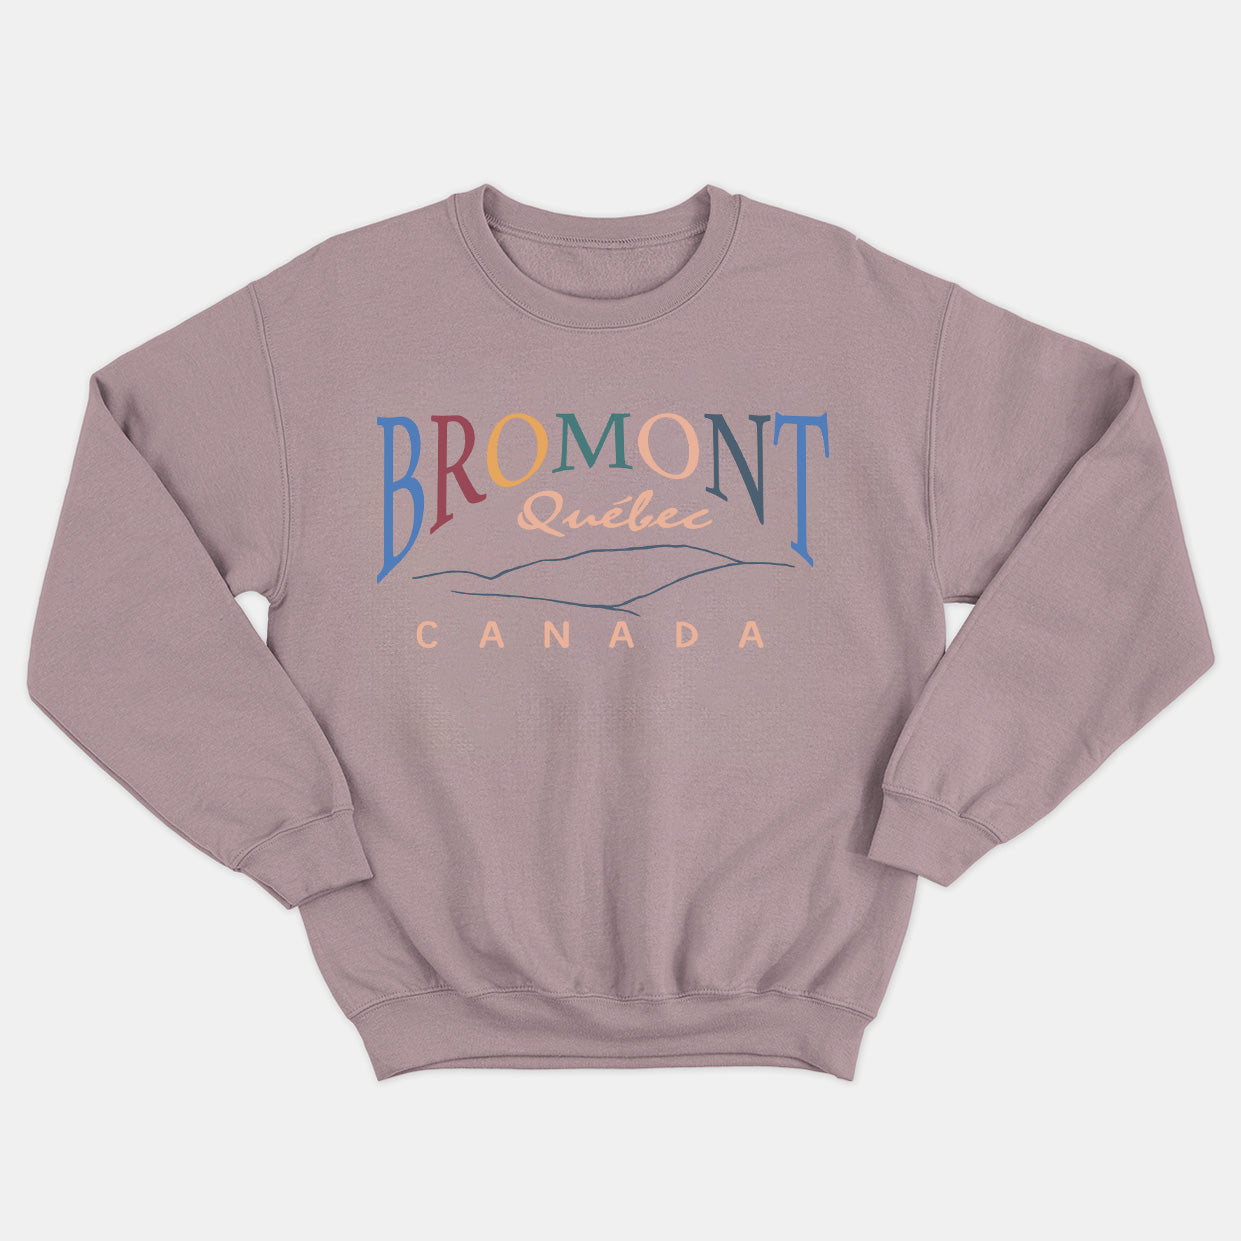 Bromont - crewneck vintage unisexe - tamelo boutique